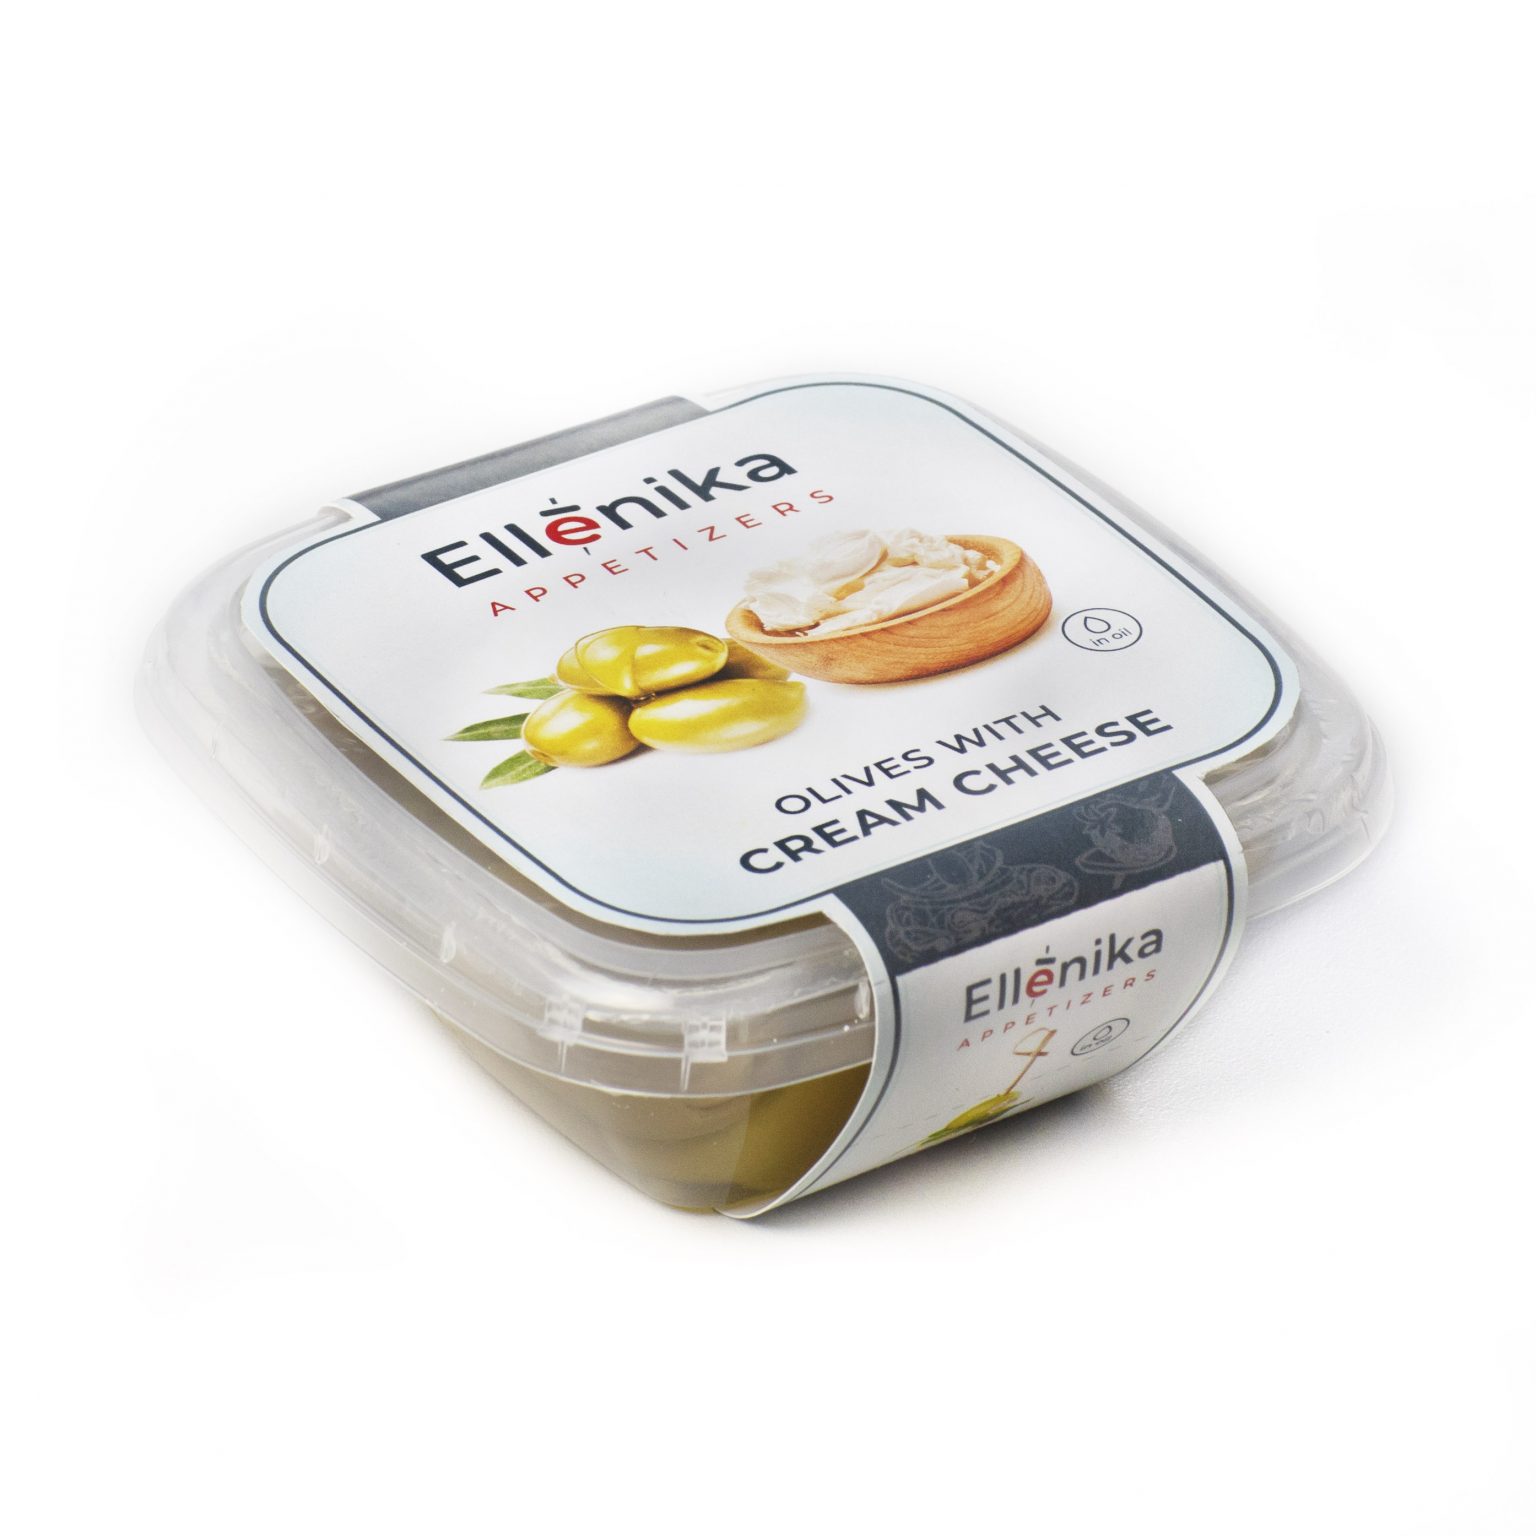 Оливки Ellenika фаршированные сливочным сыром в масле 130 г томаты вяленные ellenika фаршированные сыром 130 г